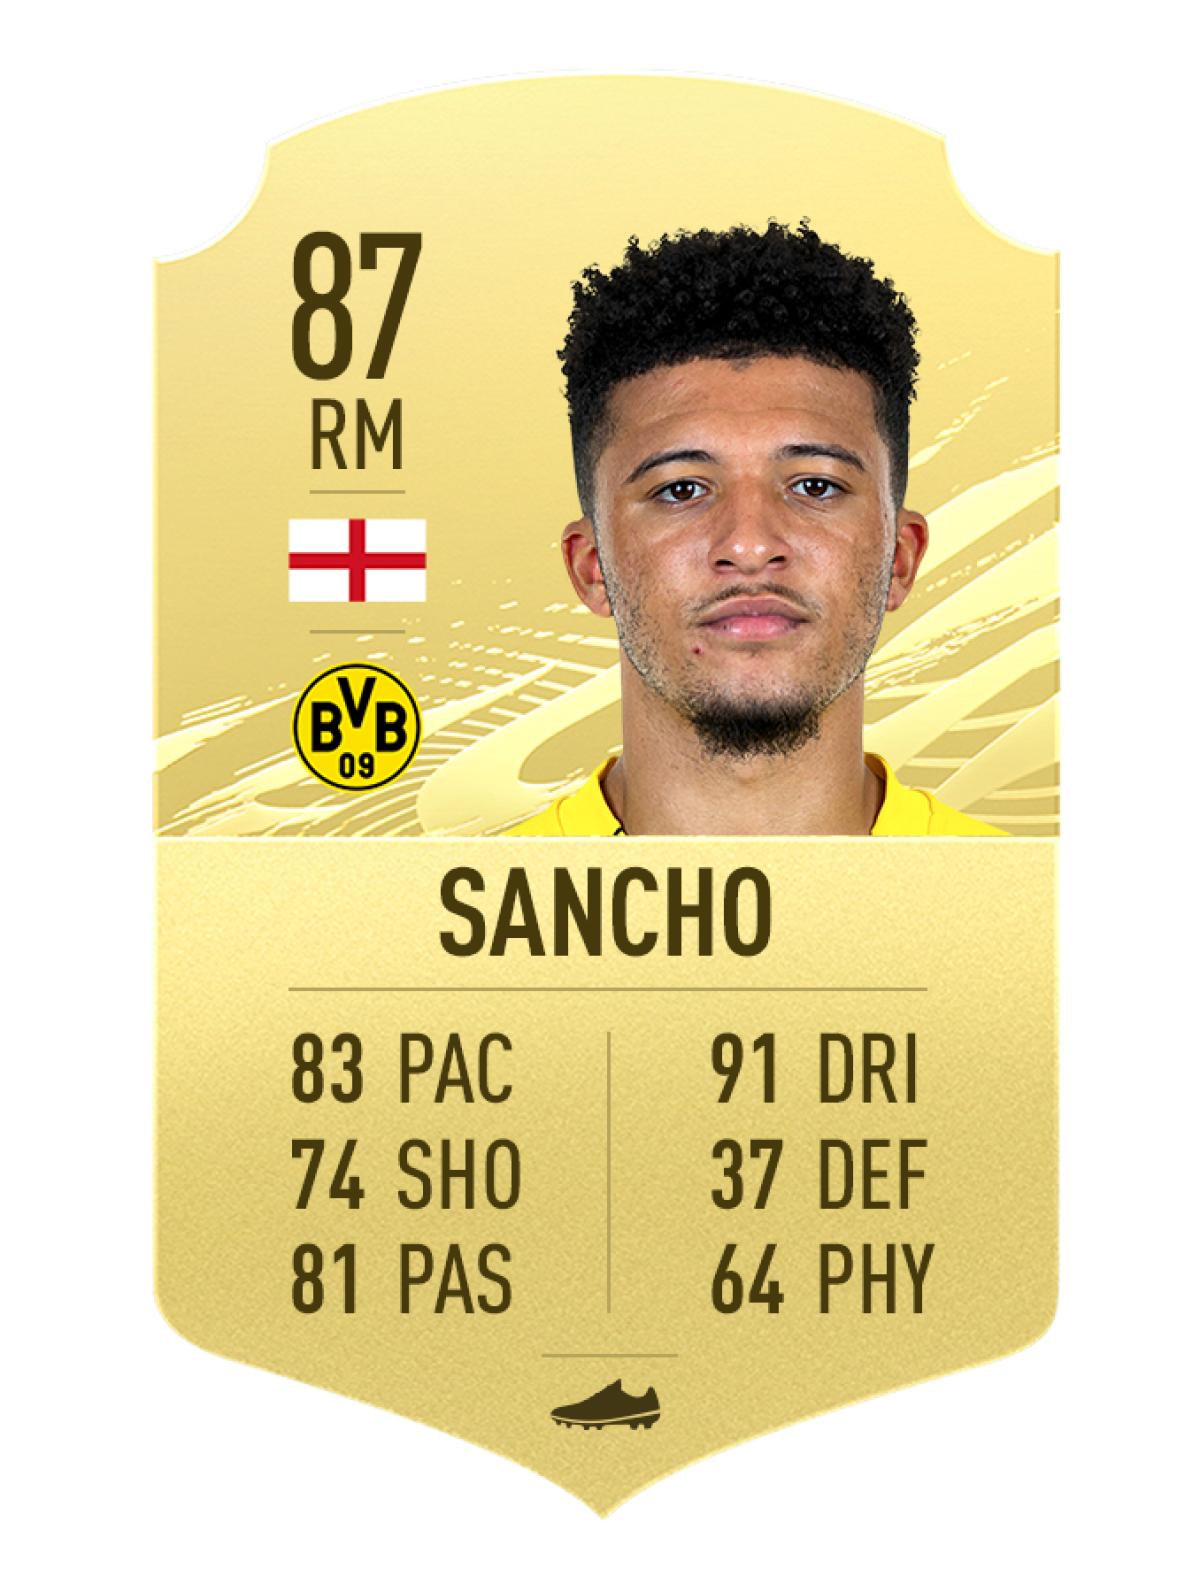 Sancho (Anh/Dortmund) - Chỉ số chung 87